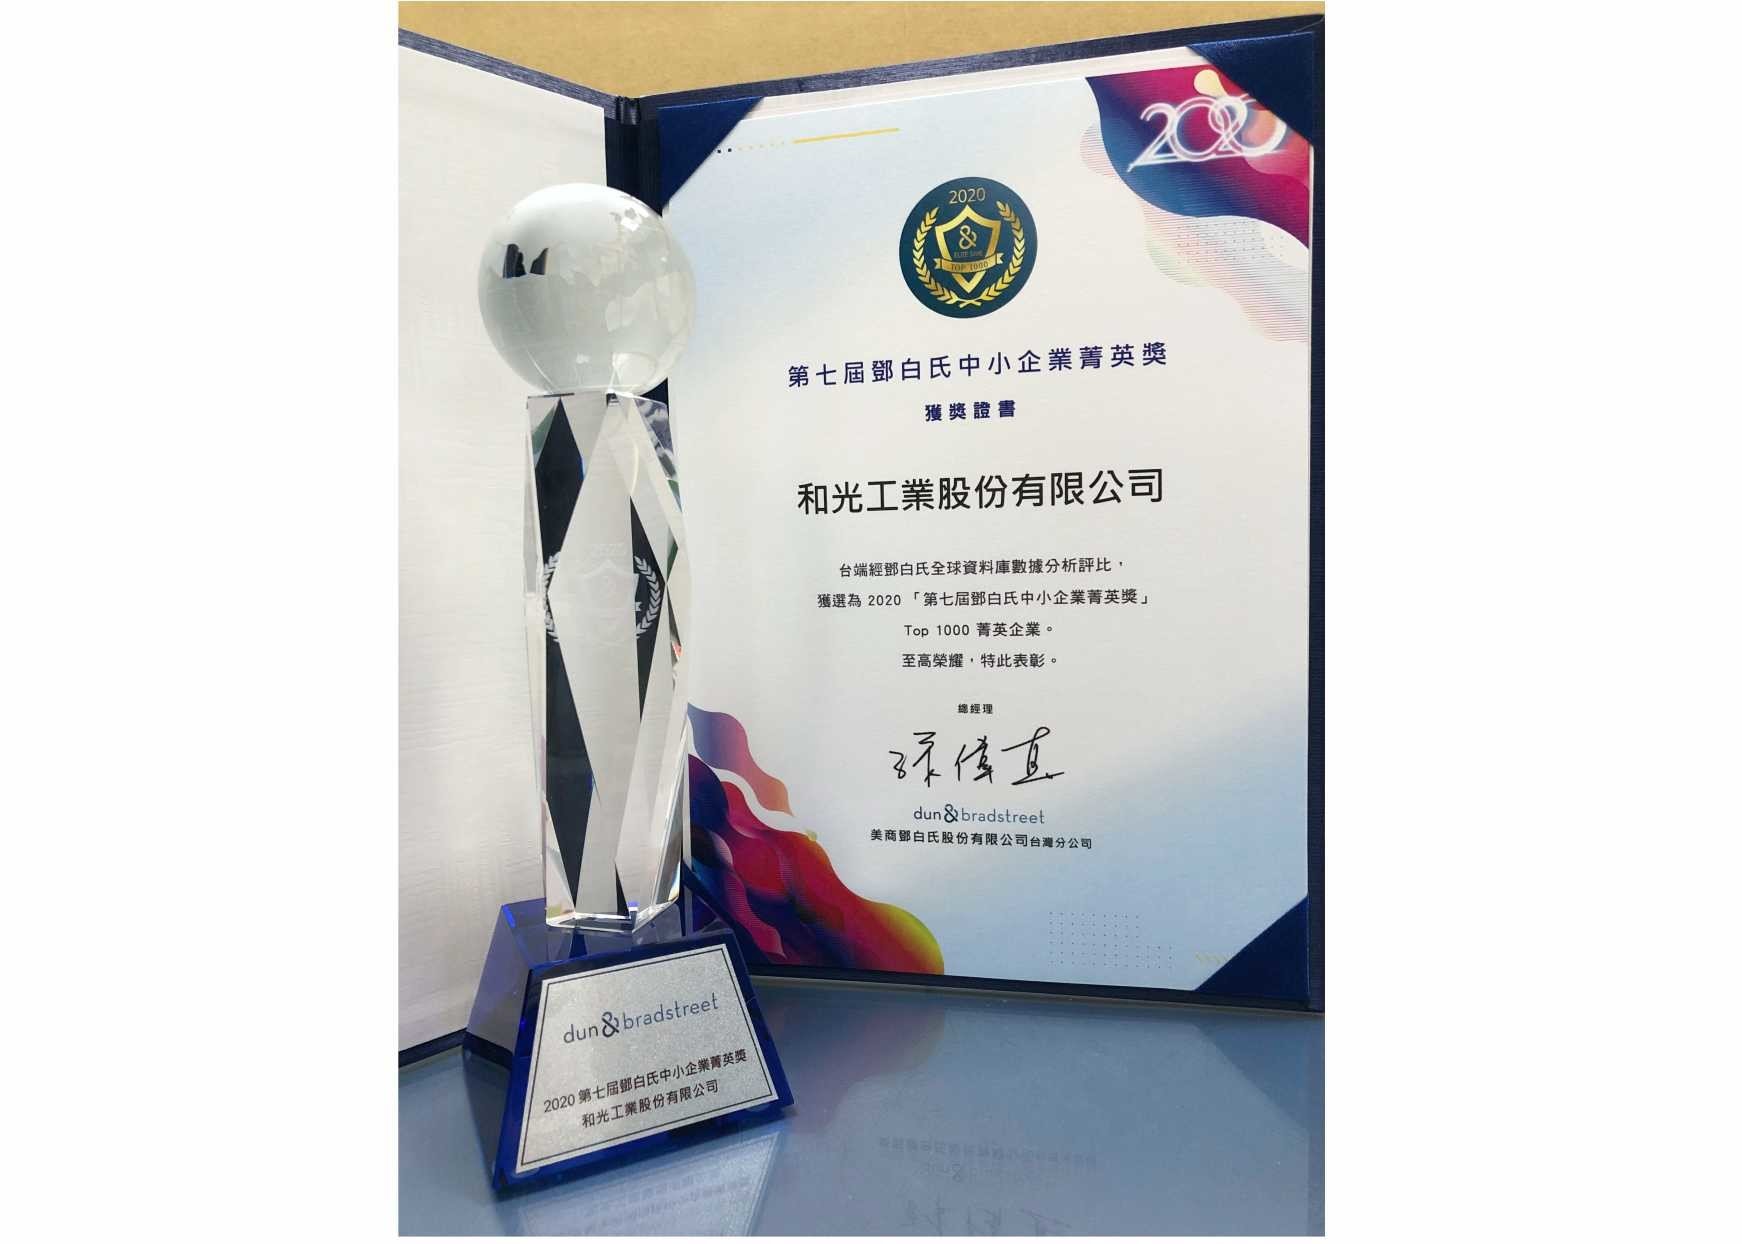 和光工業榮獲第七屆鄧白氏中小企業精英獎